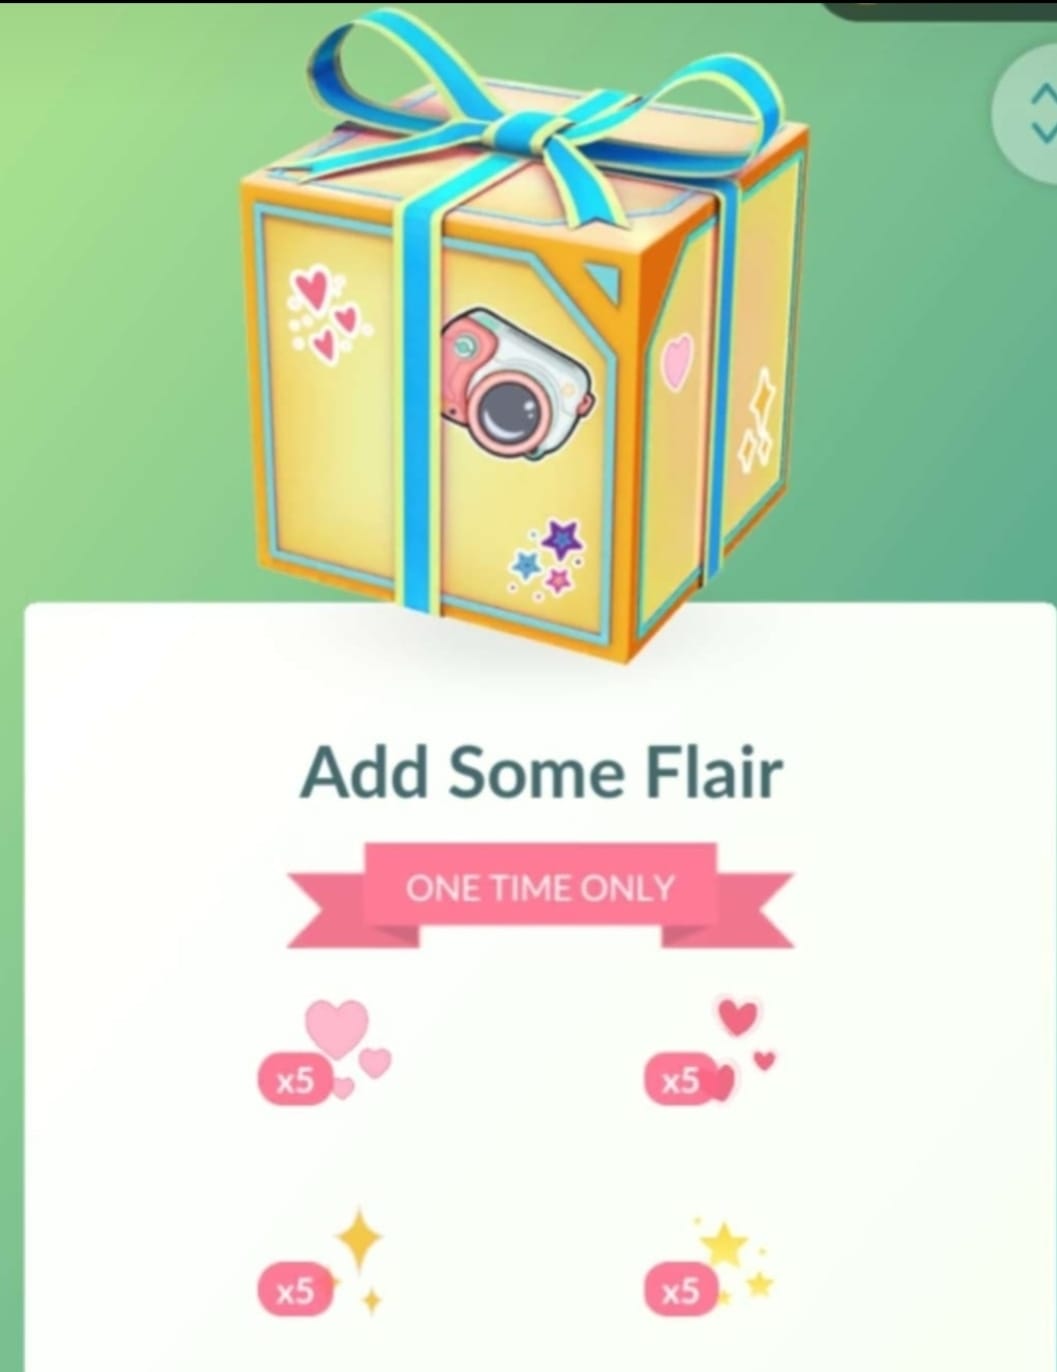 “Add Some Flaire” is een nieuwe gratis box met stickers